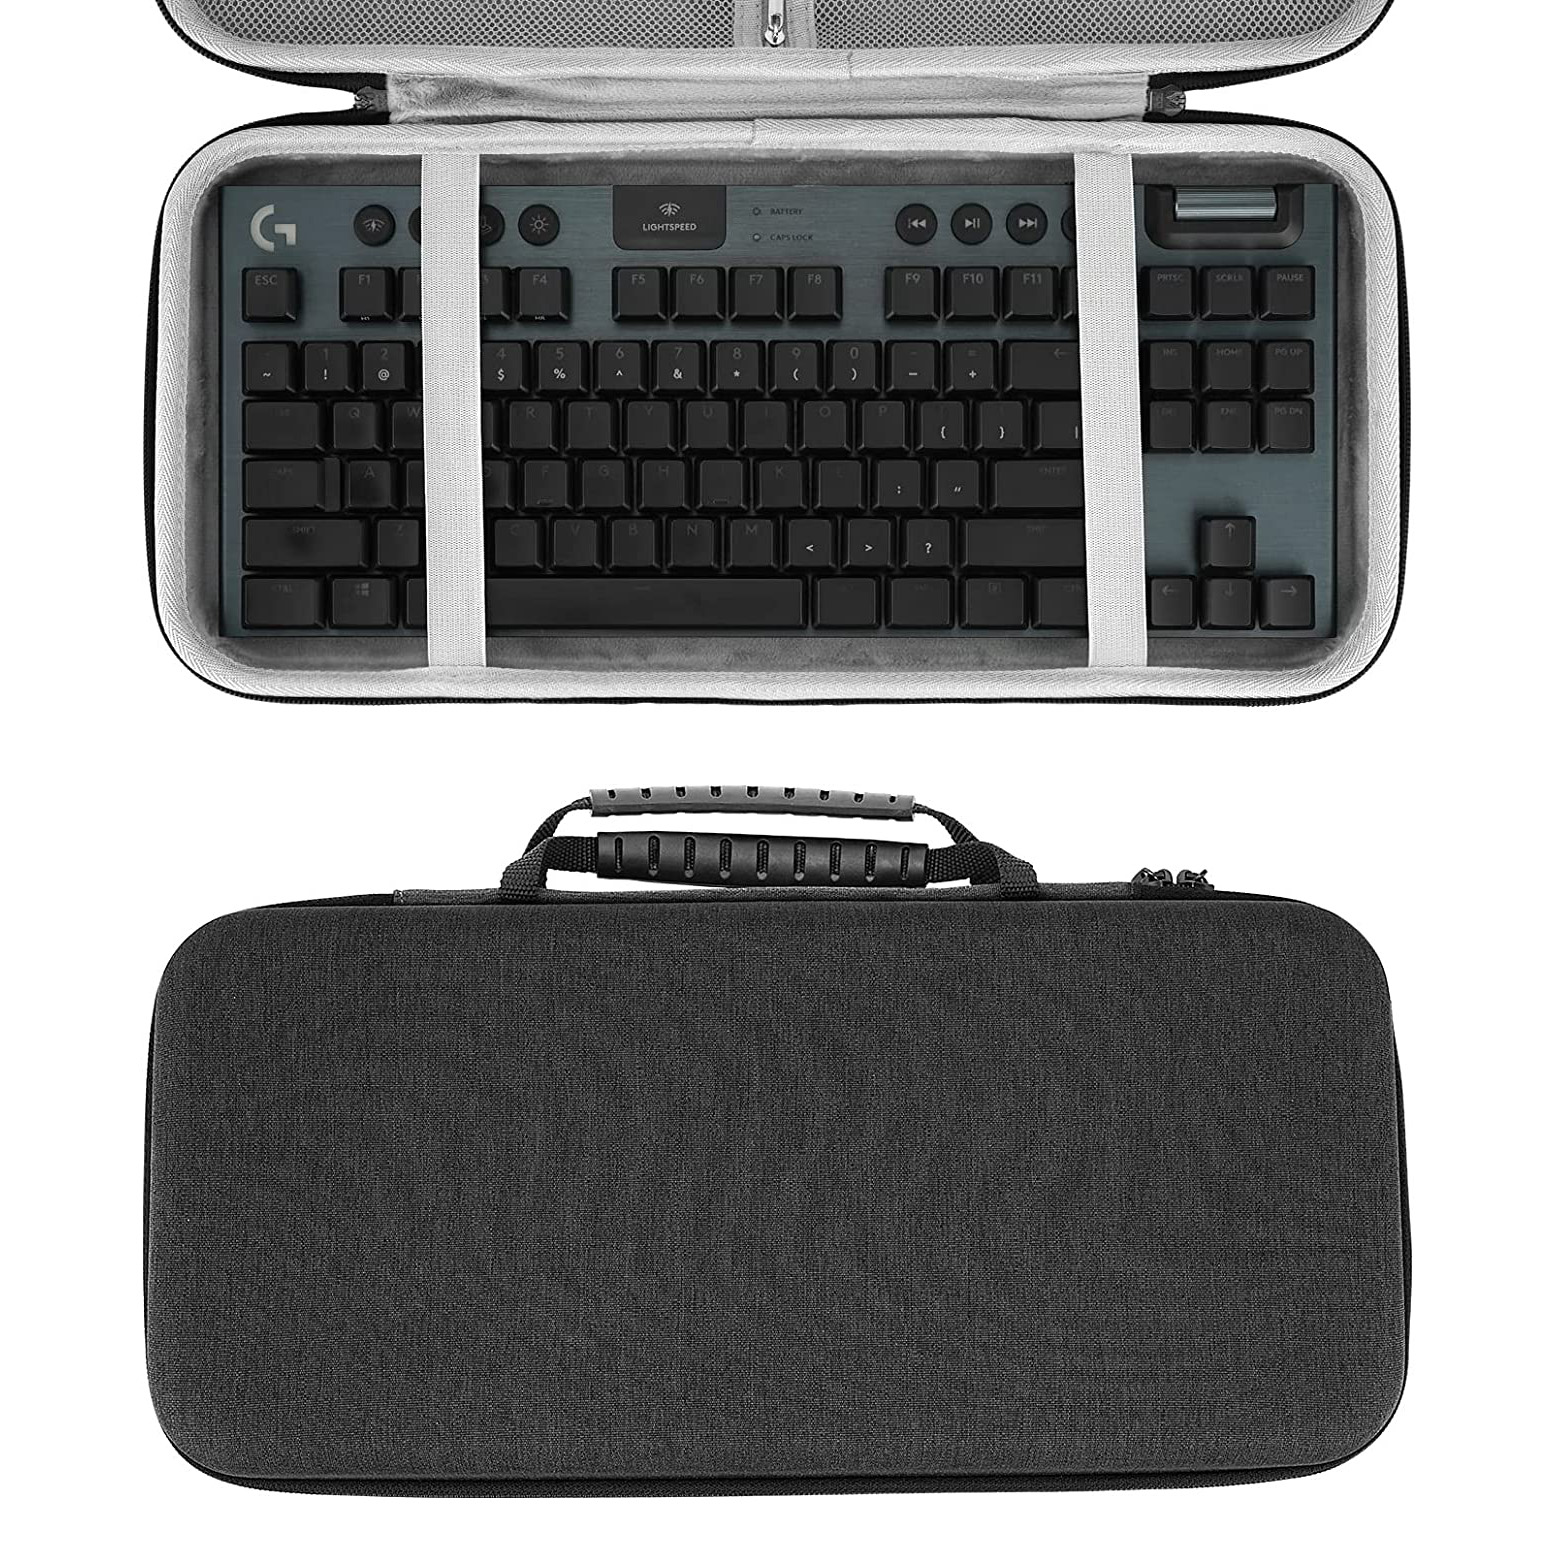 Caja que lleva portátil modificada para requisitos particulares de Eva para el bolso duro de la caja del teclado de Eva del teclado mecánico de 61 teclas